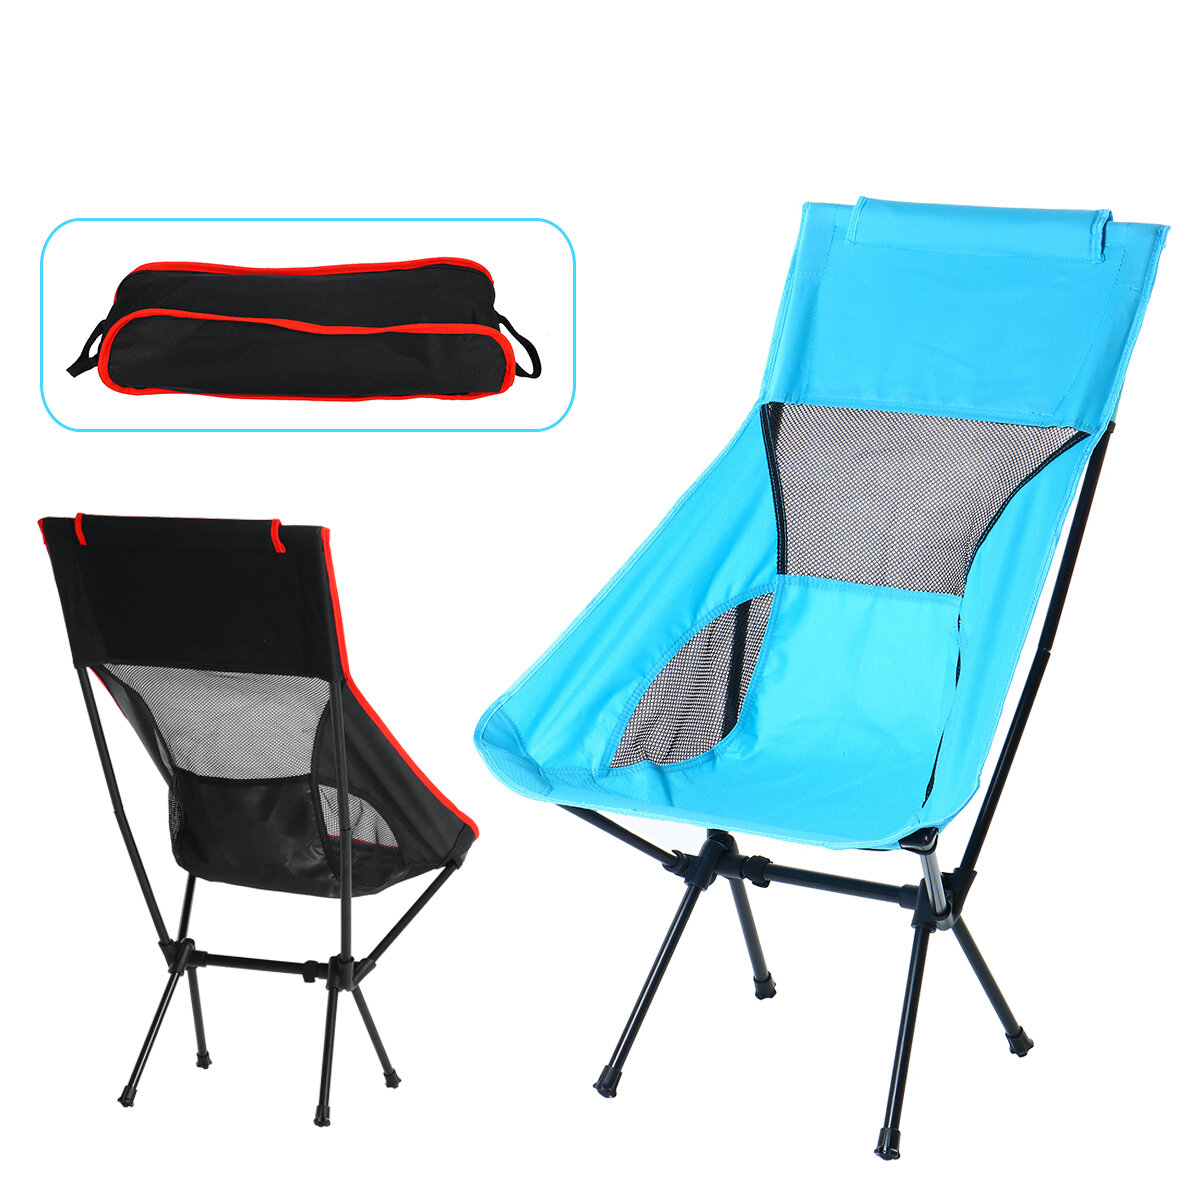 Açık Kampçılık Sandalye Oxford Kumaş Taşınabilir Katlanır Uzatmak Kampçılık Ultralight Sandalye Koltuğu Balıkçılık Piknik Barbekü Plaj 120KG Max Rulman